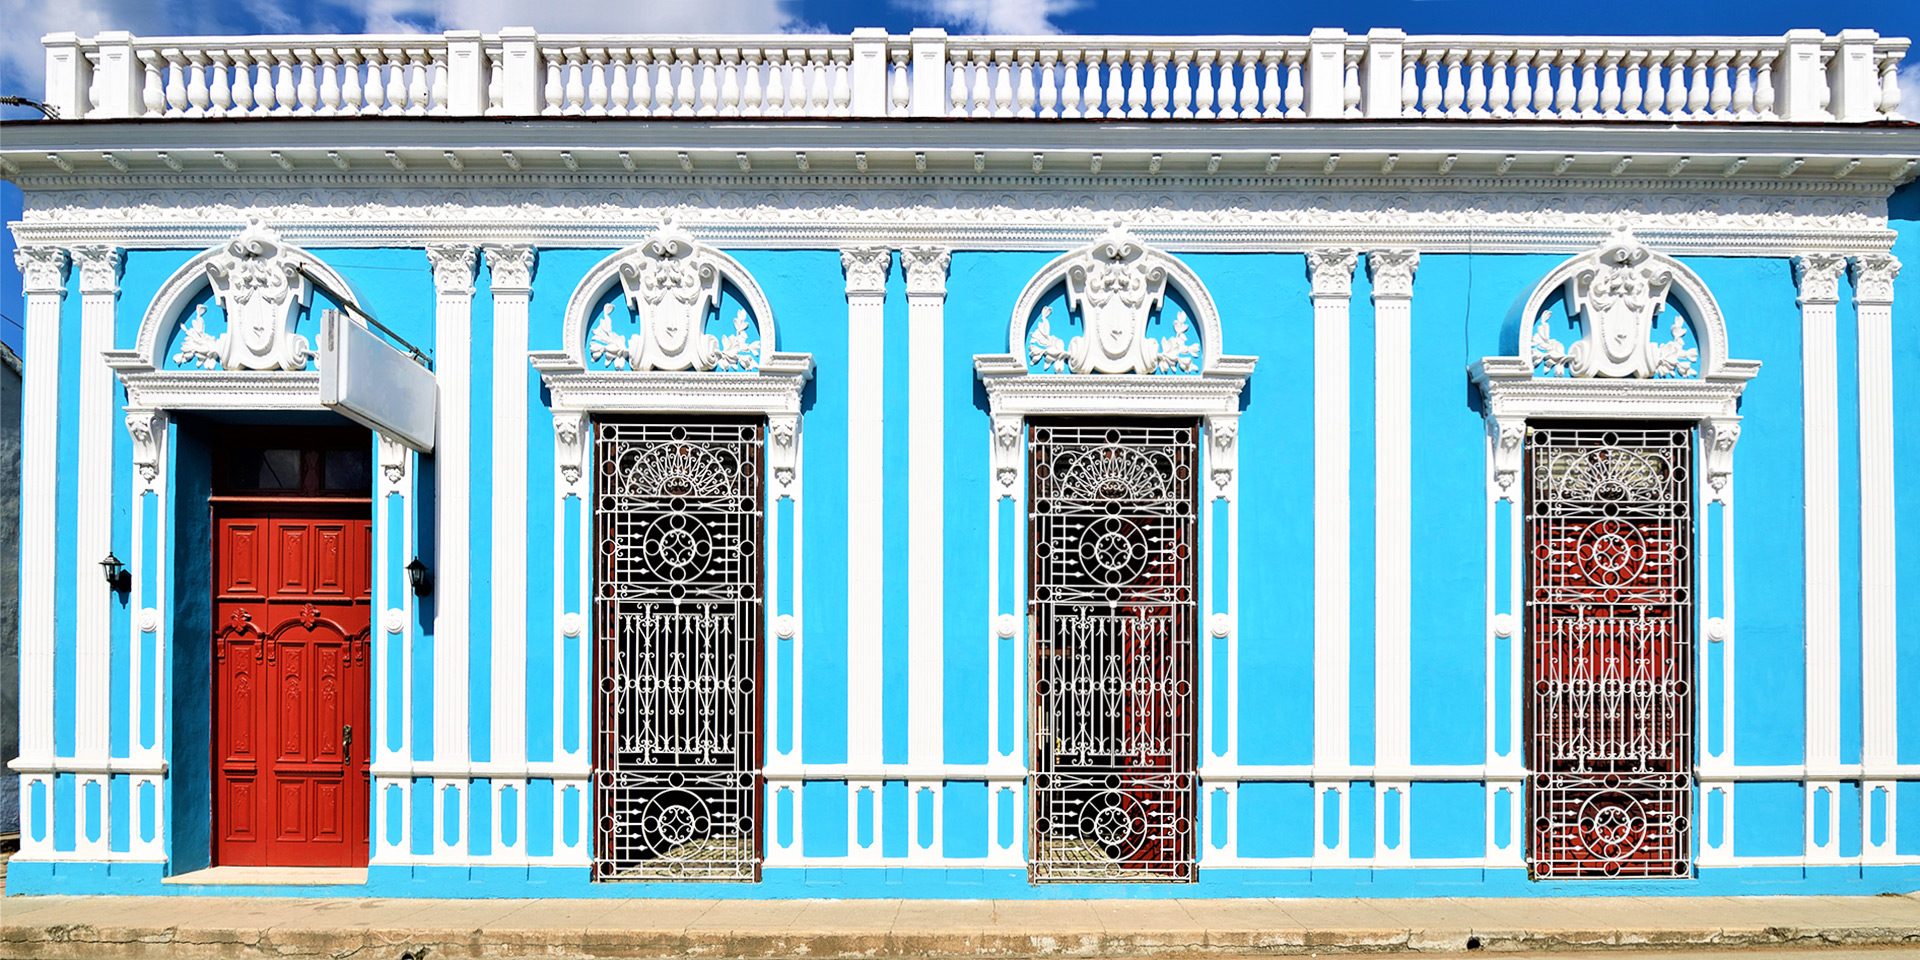 kolonialna zabudowa, Sancti Spiritus, Kuba, zabytki, błękitna kamienica, miasta na Kubie, fasada budynku, blog itaki